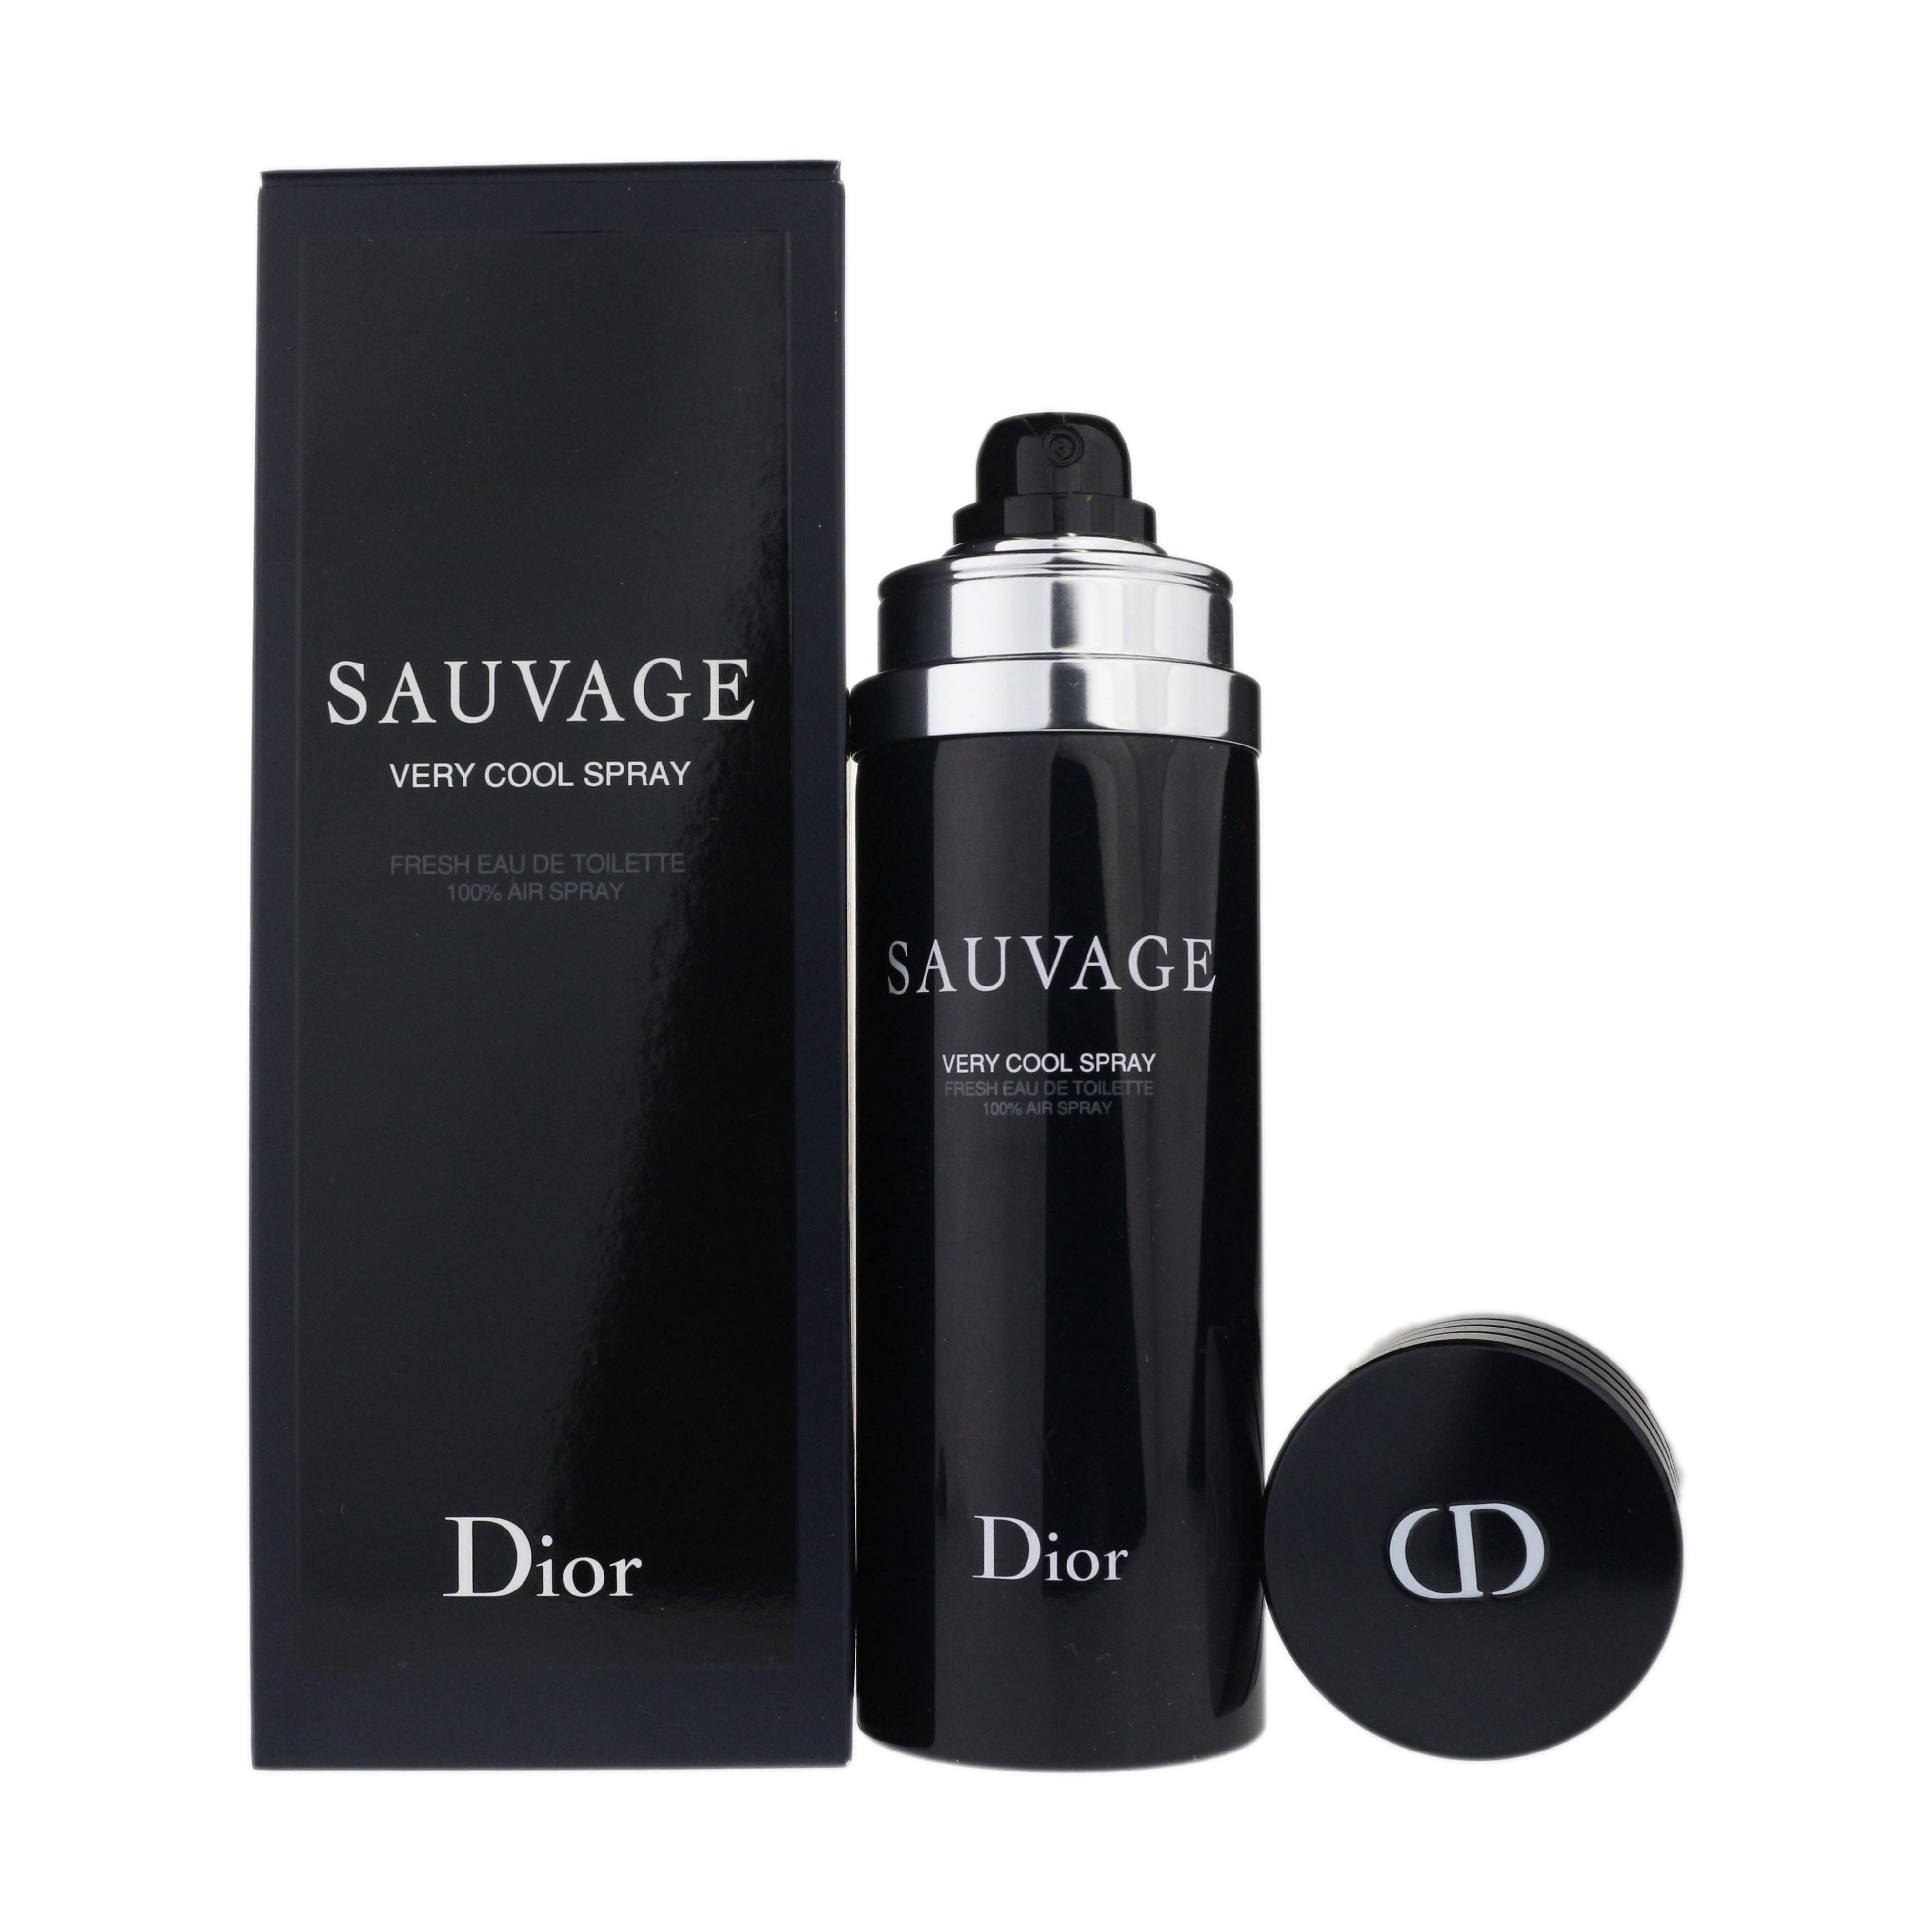 dior sauvage deodorant spray